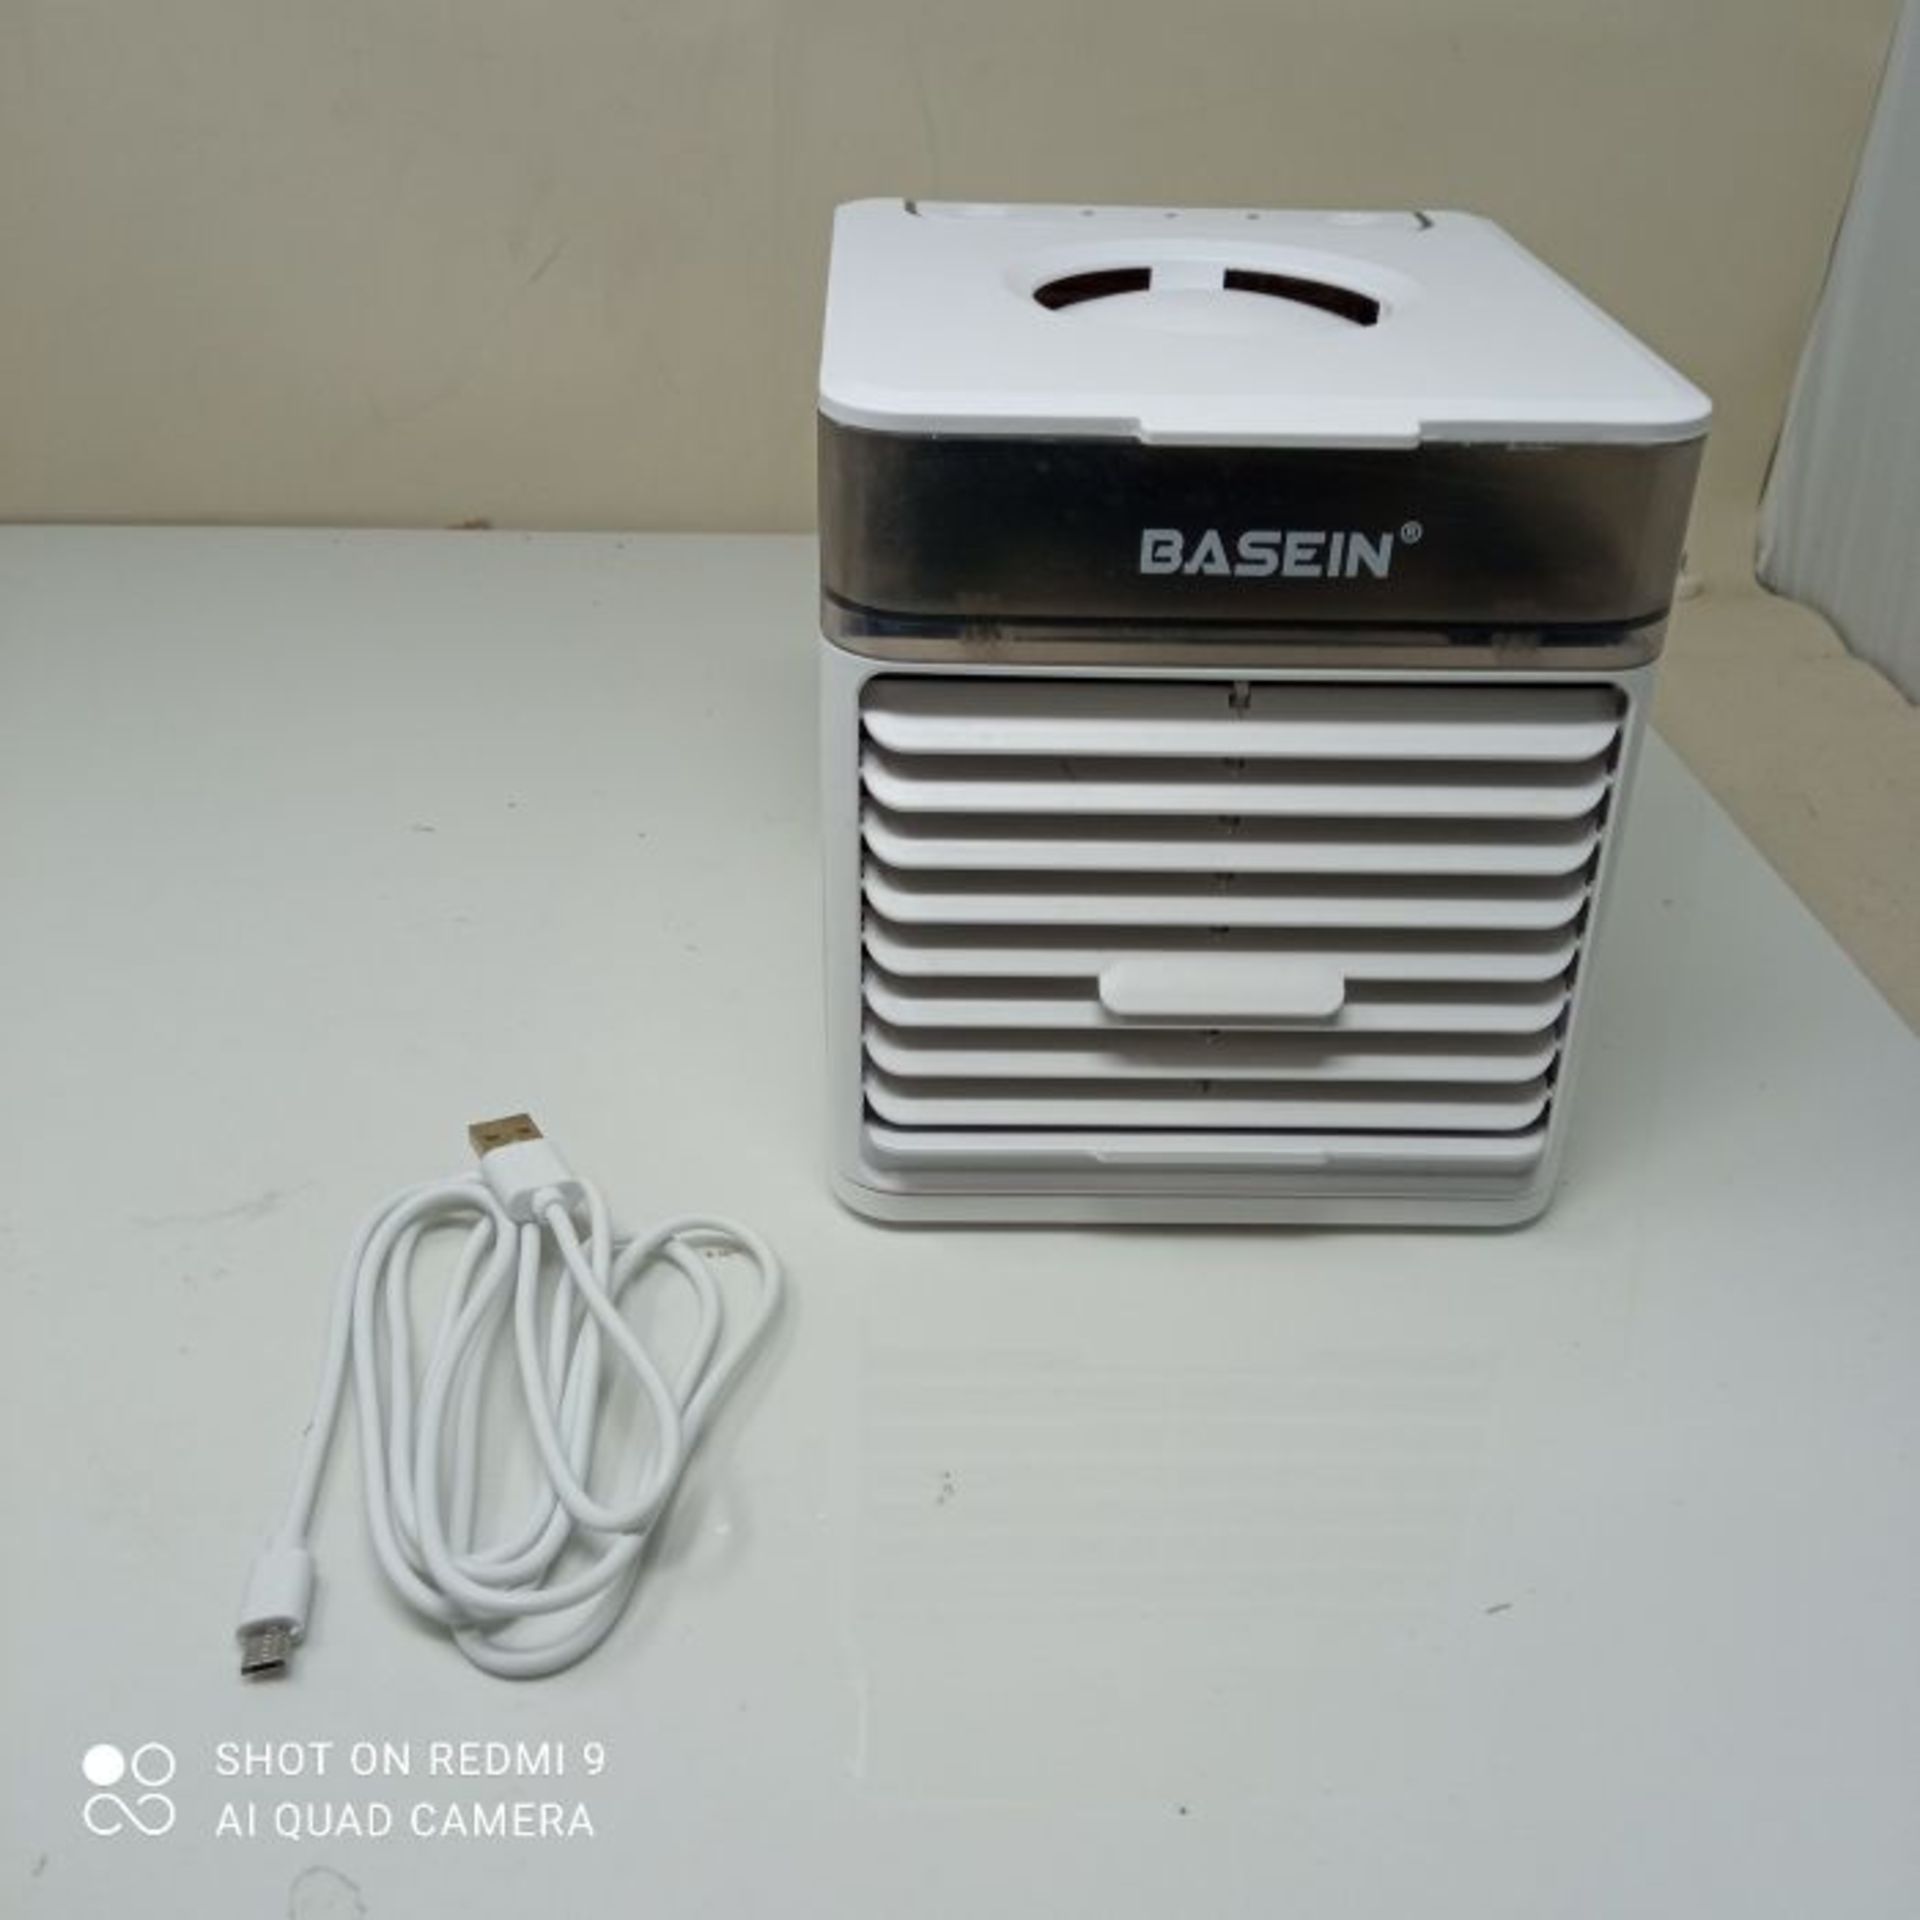 BASEIN Mobile klimageräte, Mini Air Cooler, 3 in 1 Klimaanlage, Luftbefeuchter und Lu - Image 2 of 2